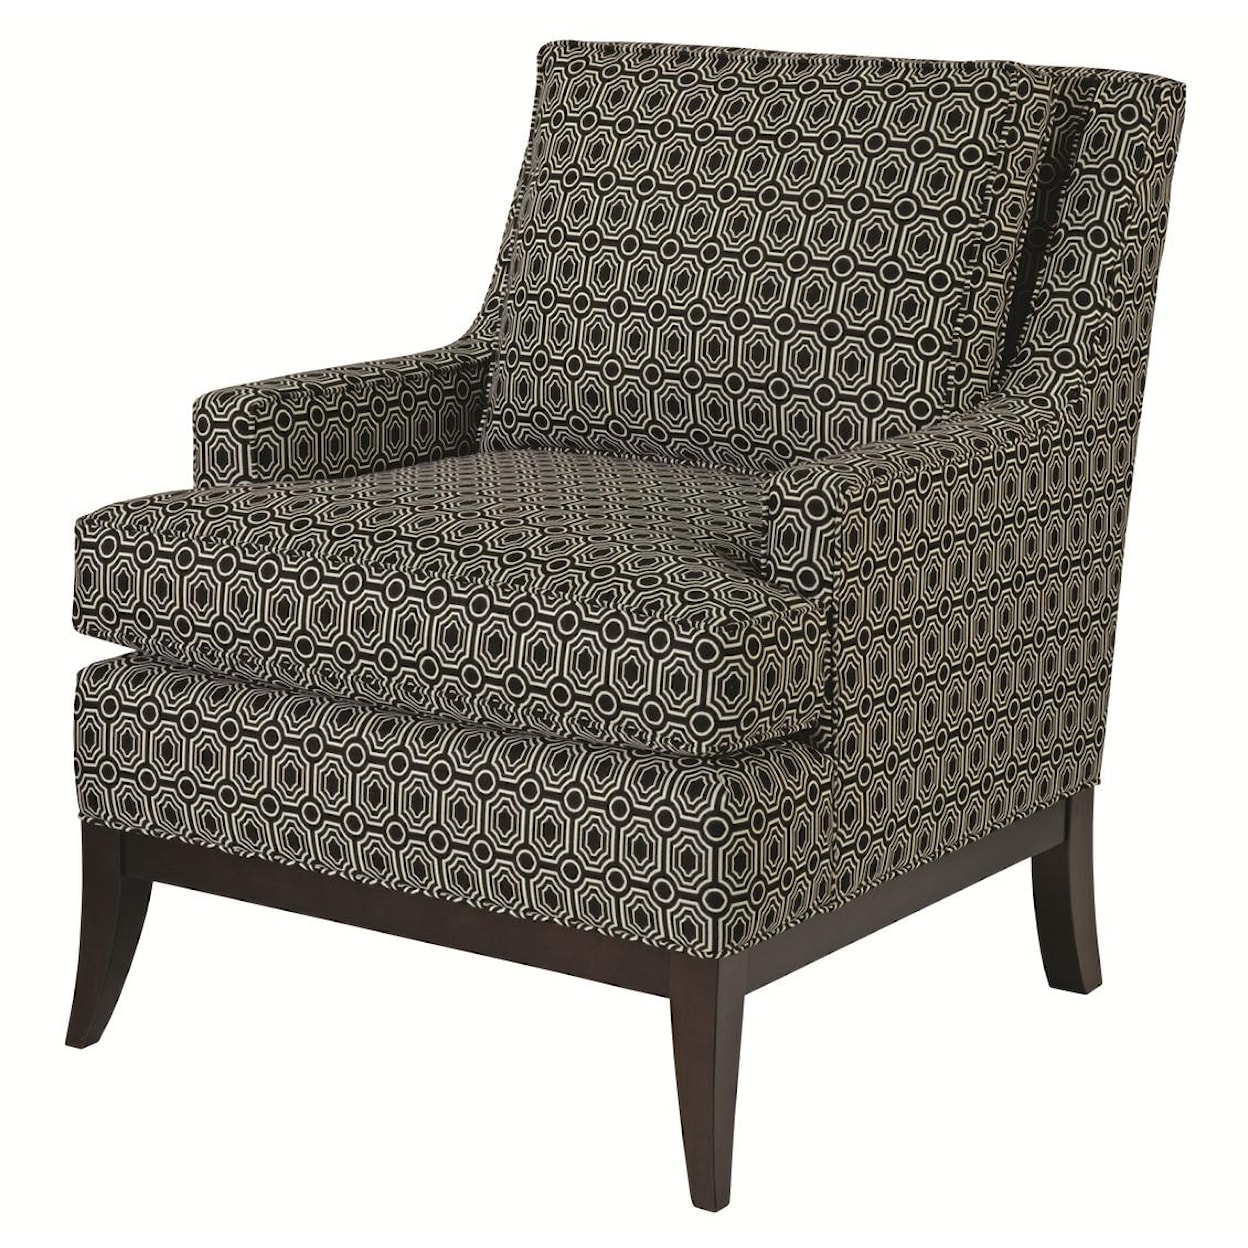 Kincaid Furniture Accent Chairs Park Avenue Chair